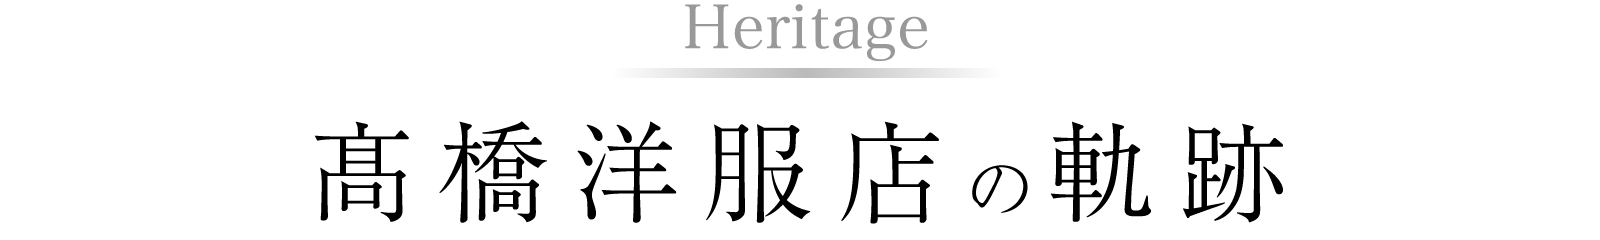 Heritage　高橋洋服店の軌跡